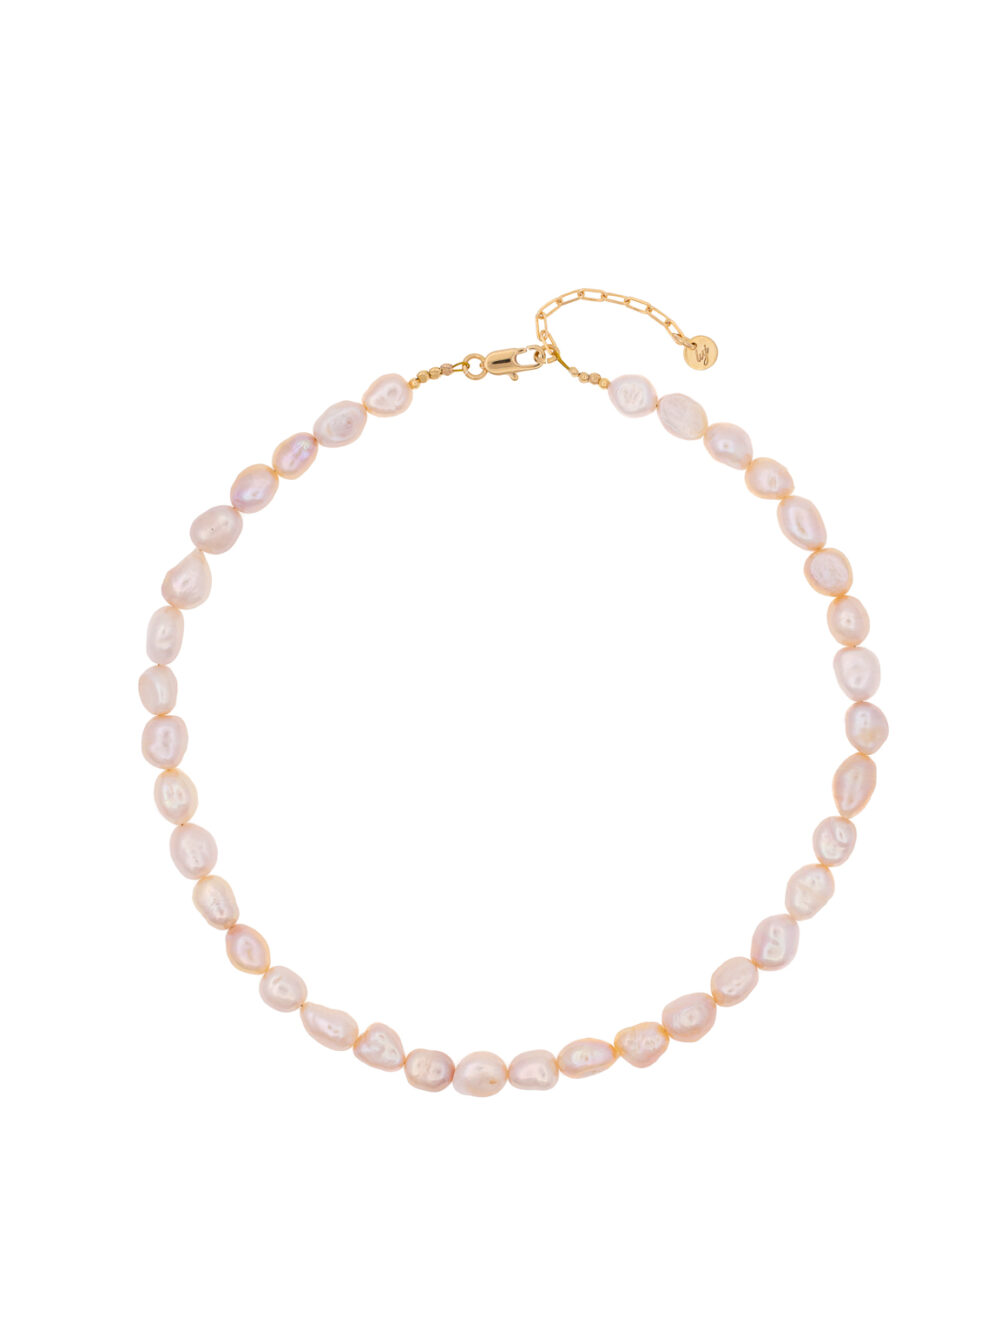 diana-pearl-choker-necklace-luj-paris-jewels 1